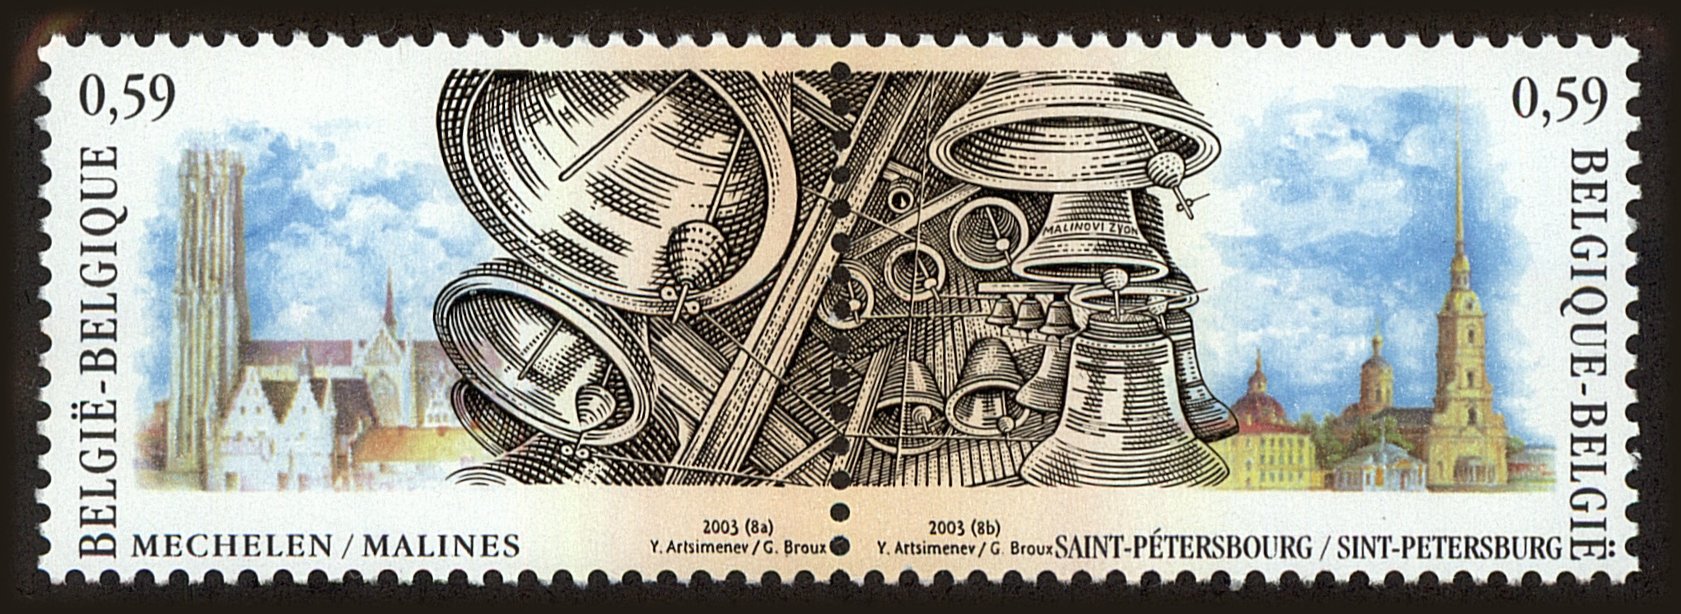 Front view of Belgium 1956 collectors stamp